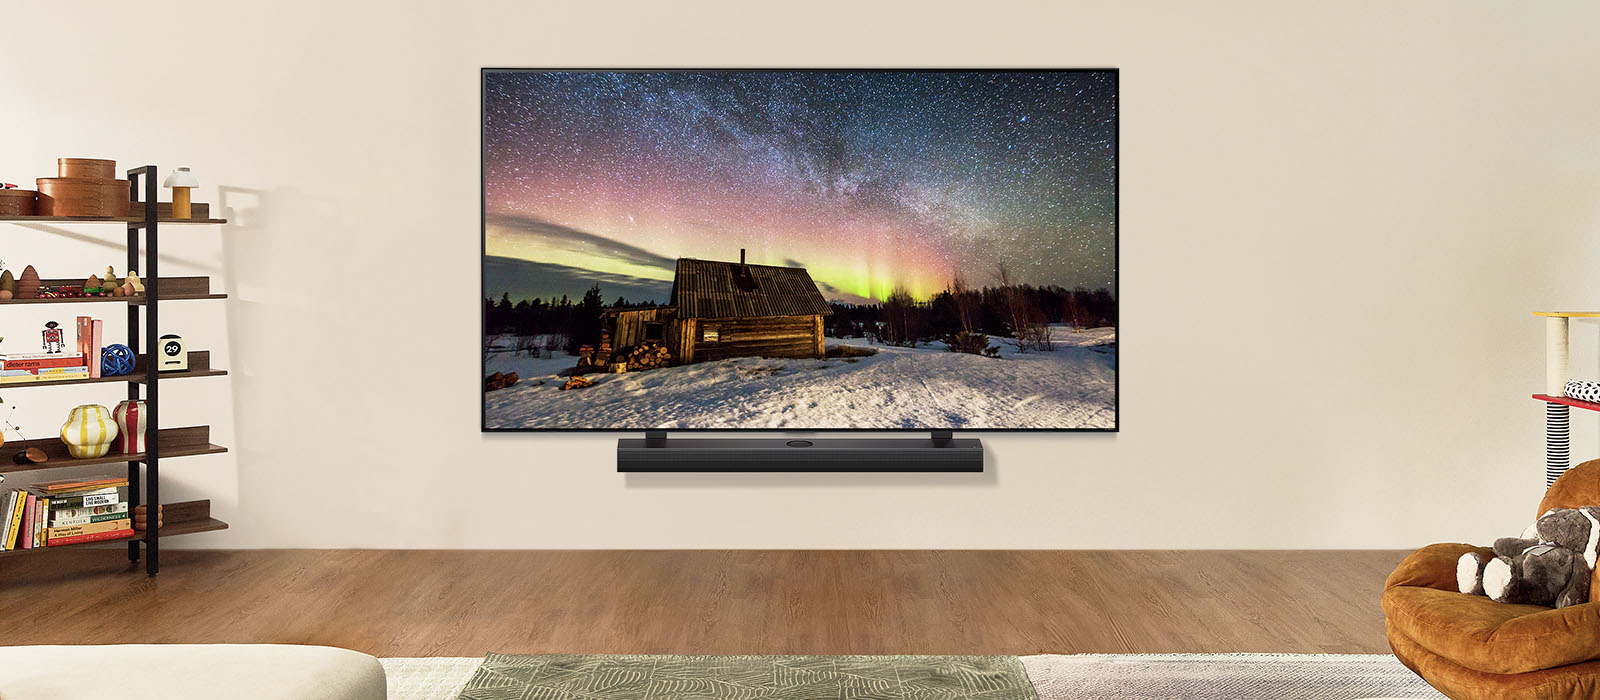 LG Fernseher und LG Soundbar in einem modernen Wohnraum bei Tag. Das Bild des Polarlichts wird auf dem Bildschirm mit der idealen Helligkeitsstufe angezeigt.	